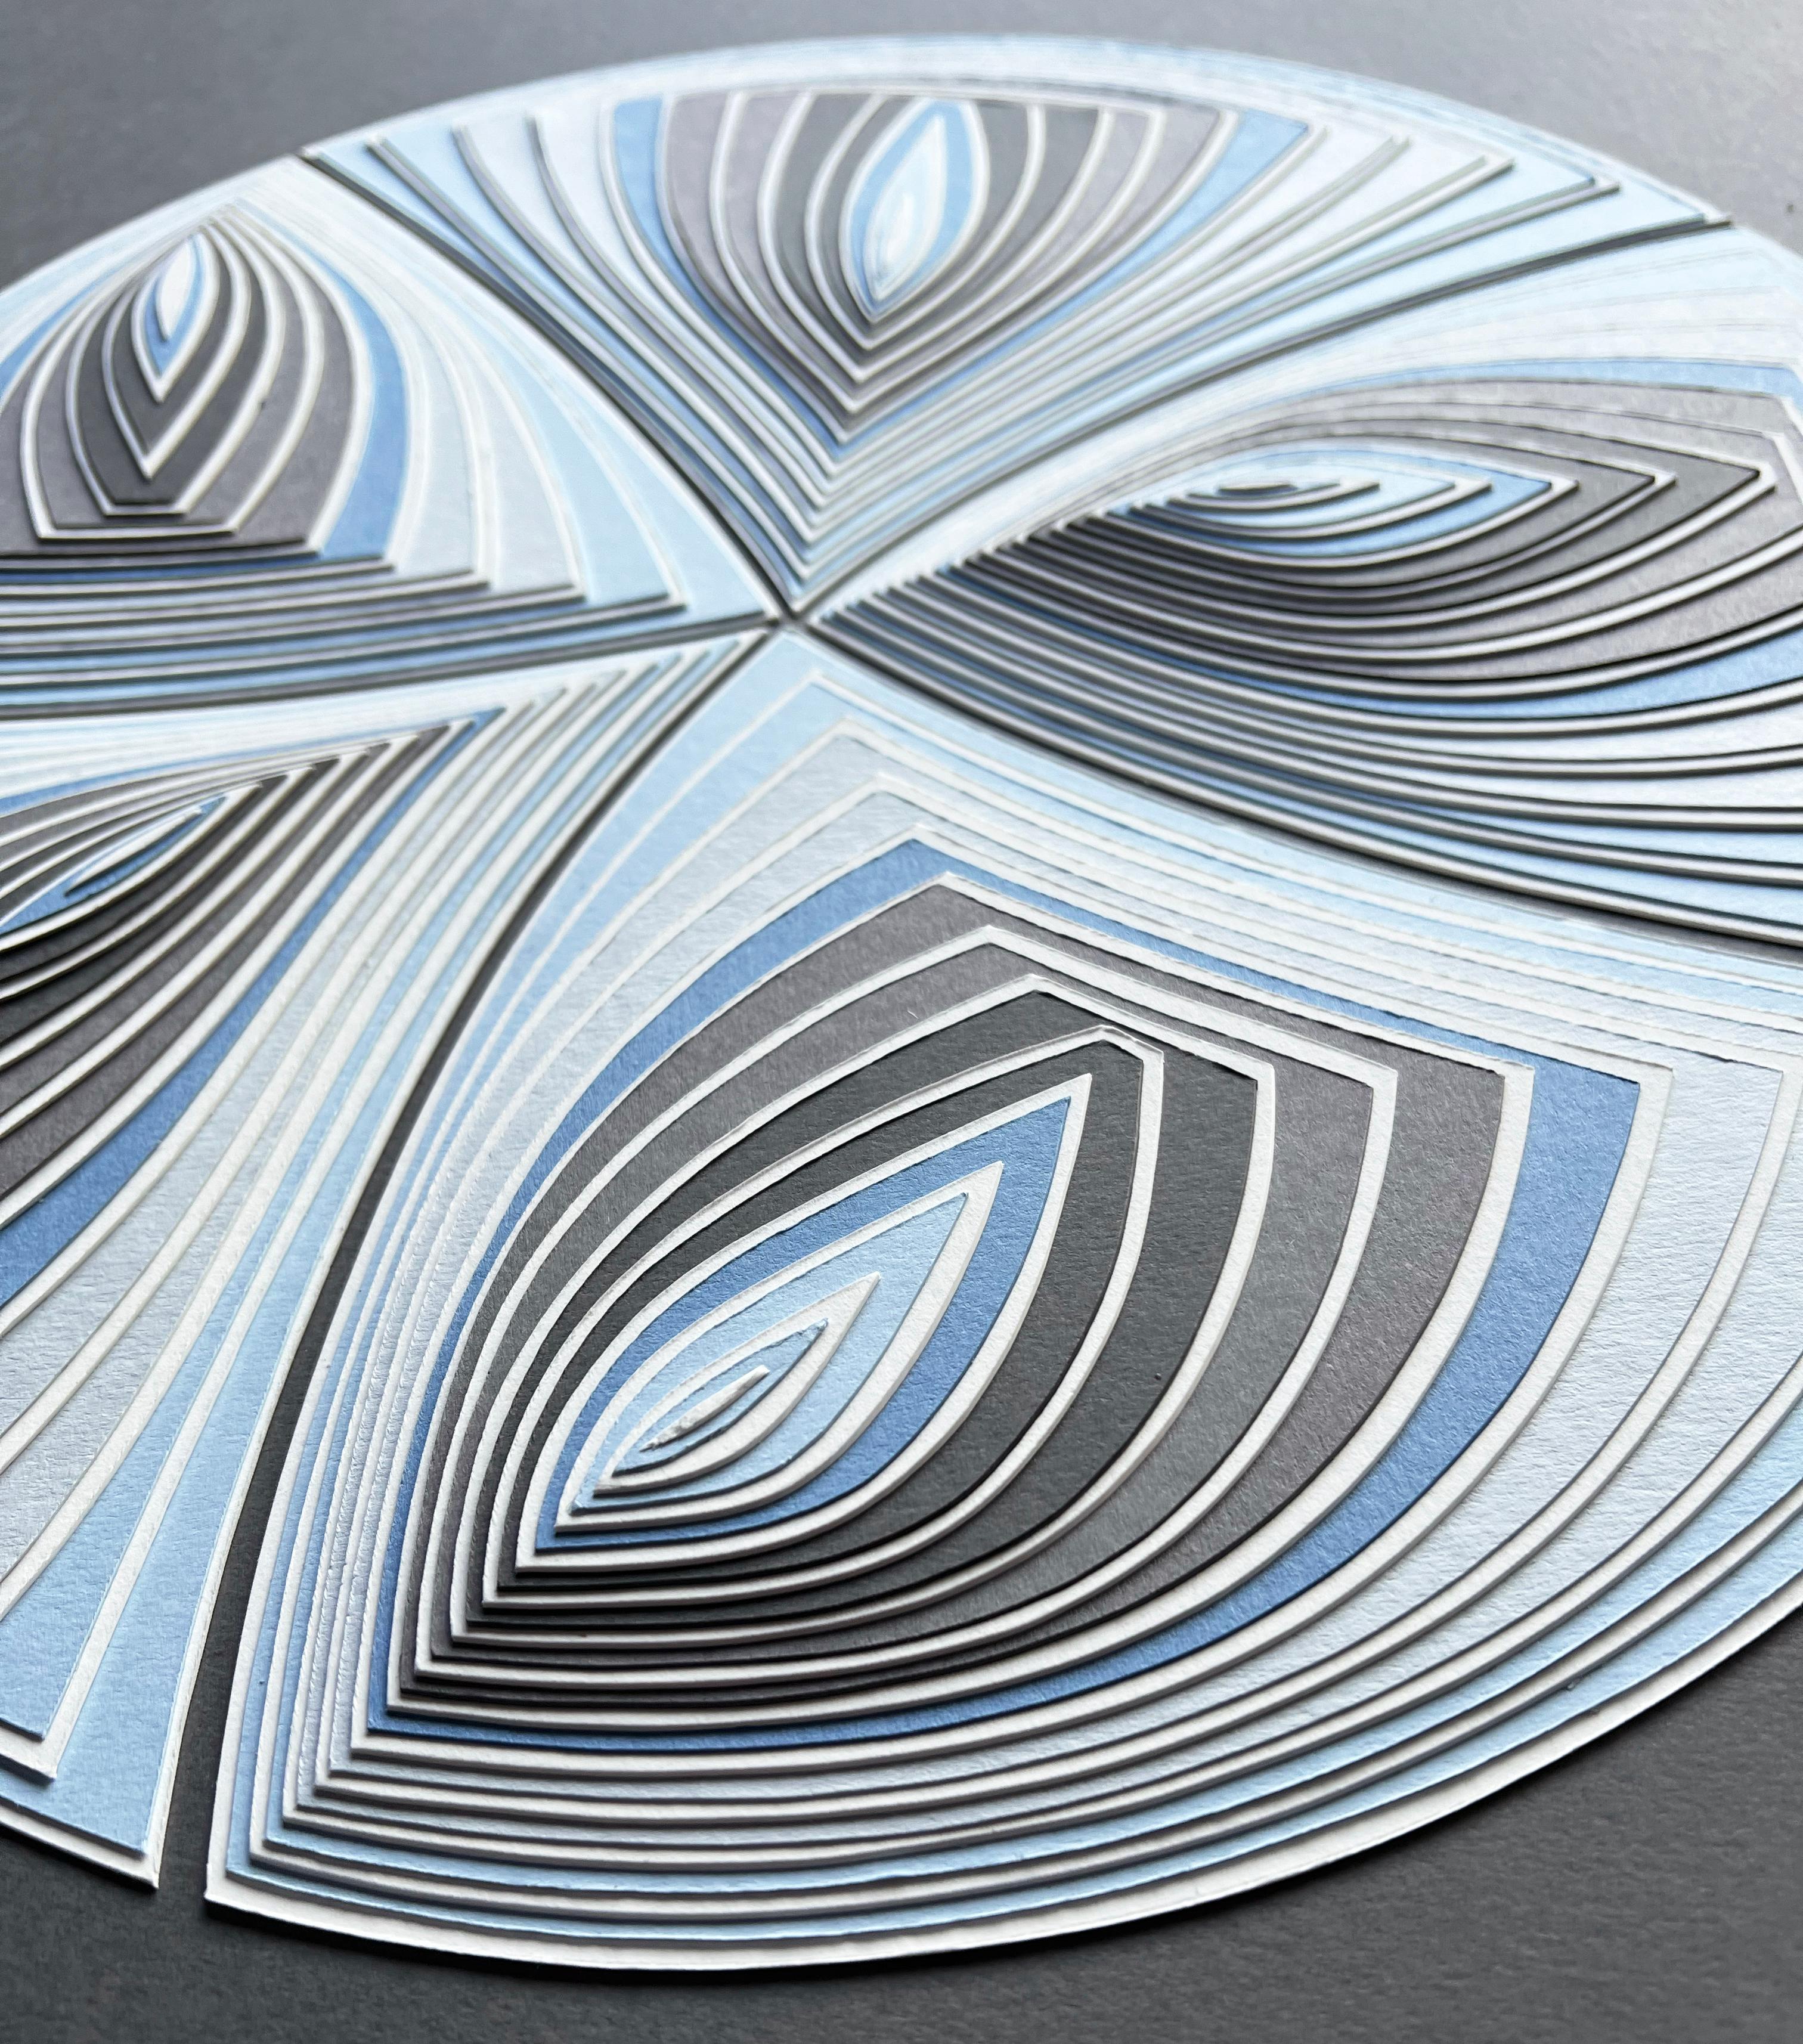 Cut Work: „Blauer Taupefarbener Kreis heraus“ (Grau), Abstract Painting, von Elizabeth Gregory-Gruen